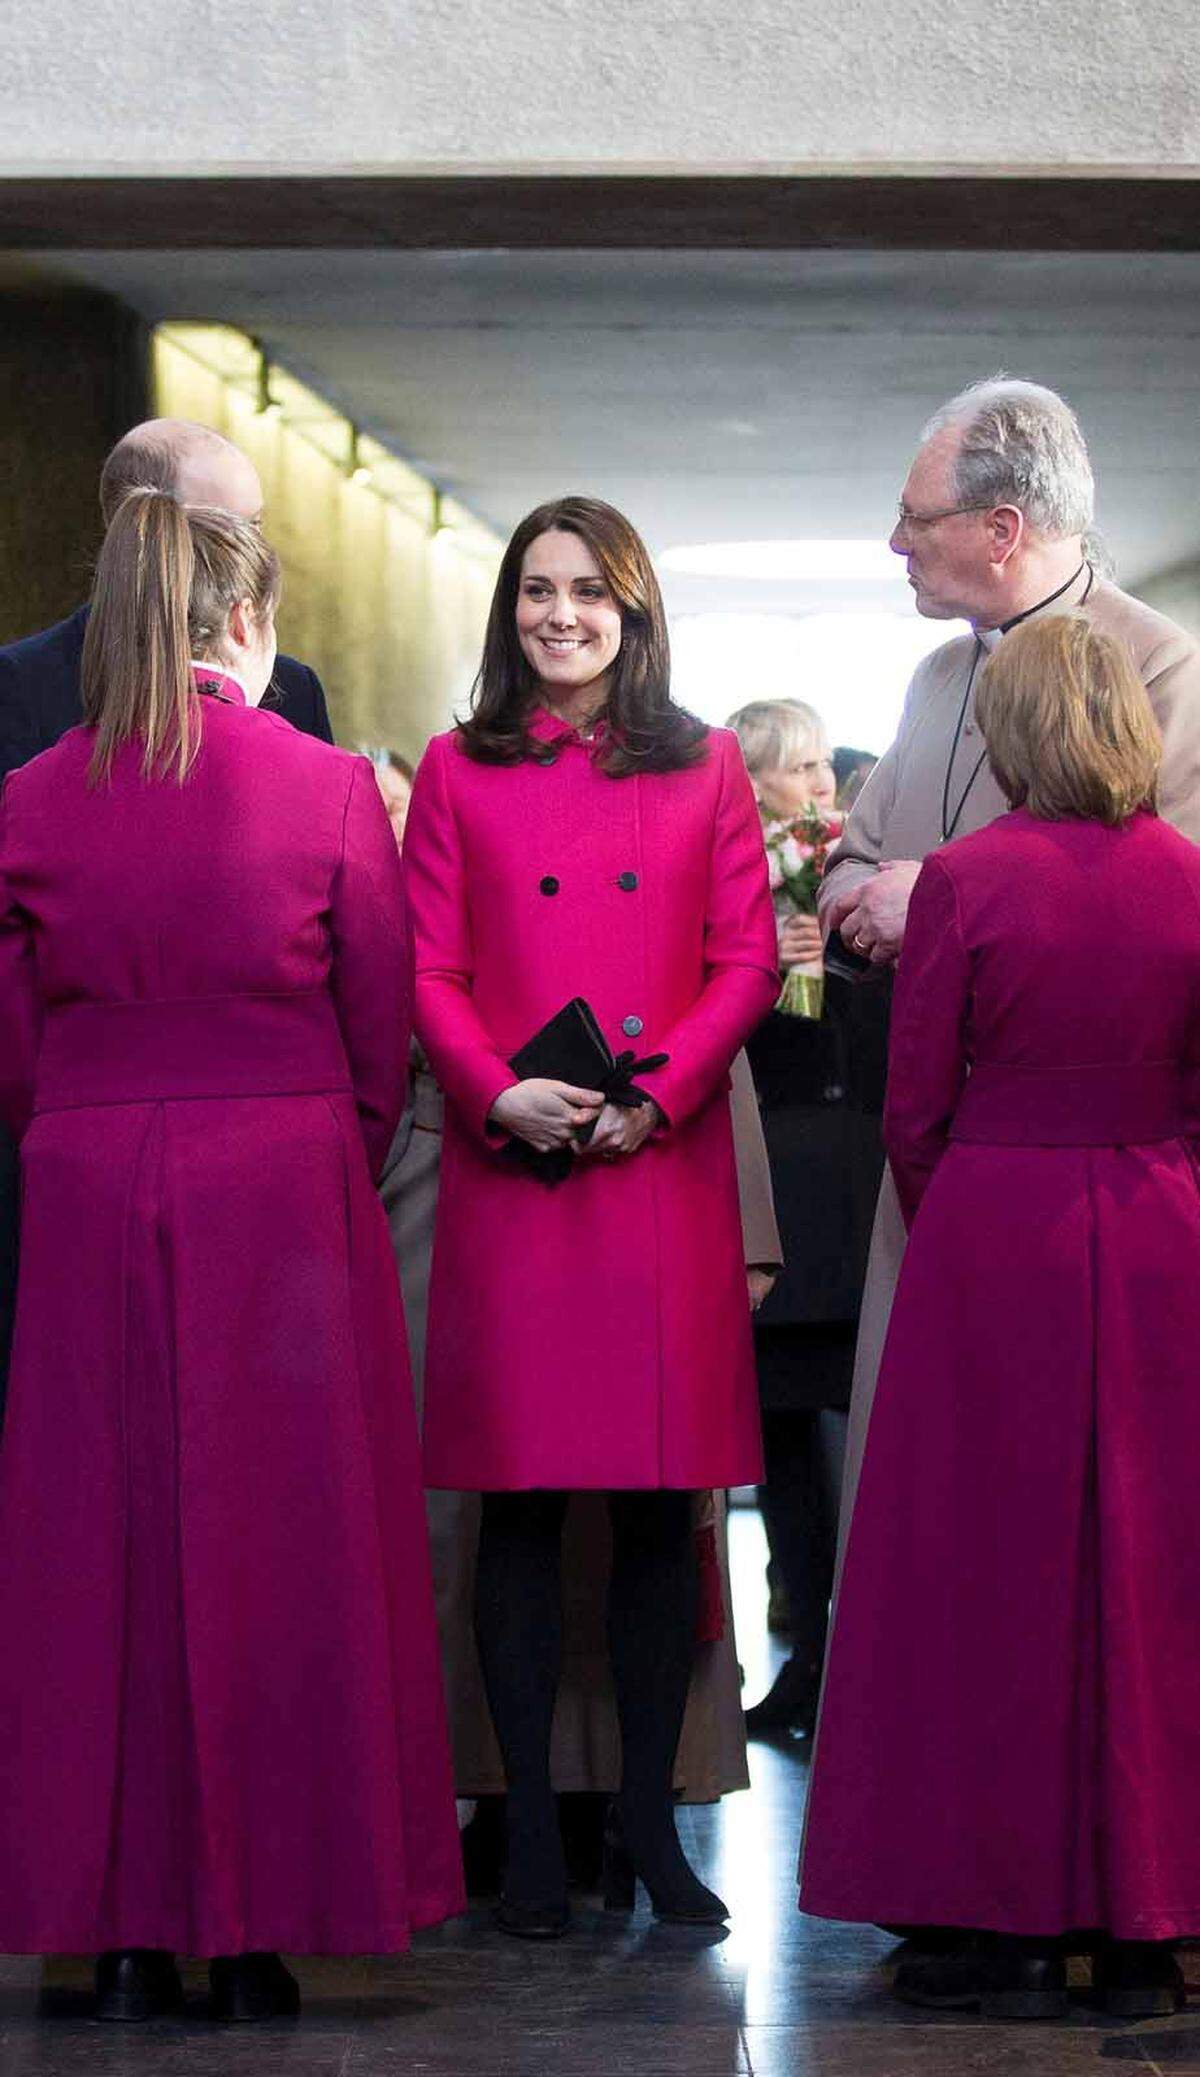 Mit diesem pinken Mantel von Mulberry ging sie in der Coventry Cathedral beinahe unter.